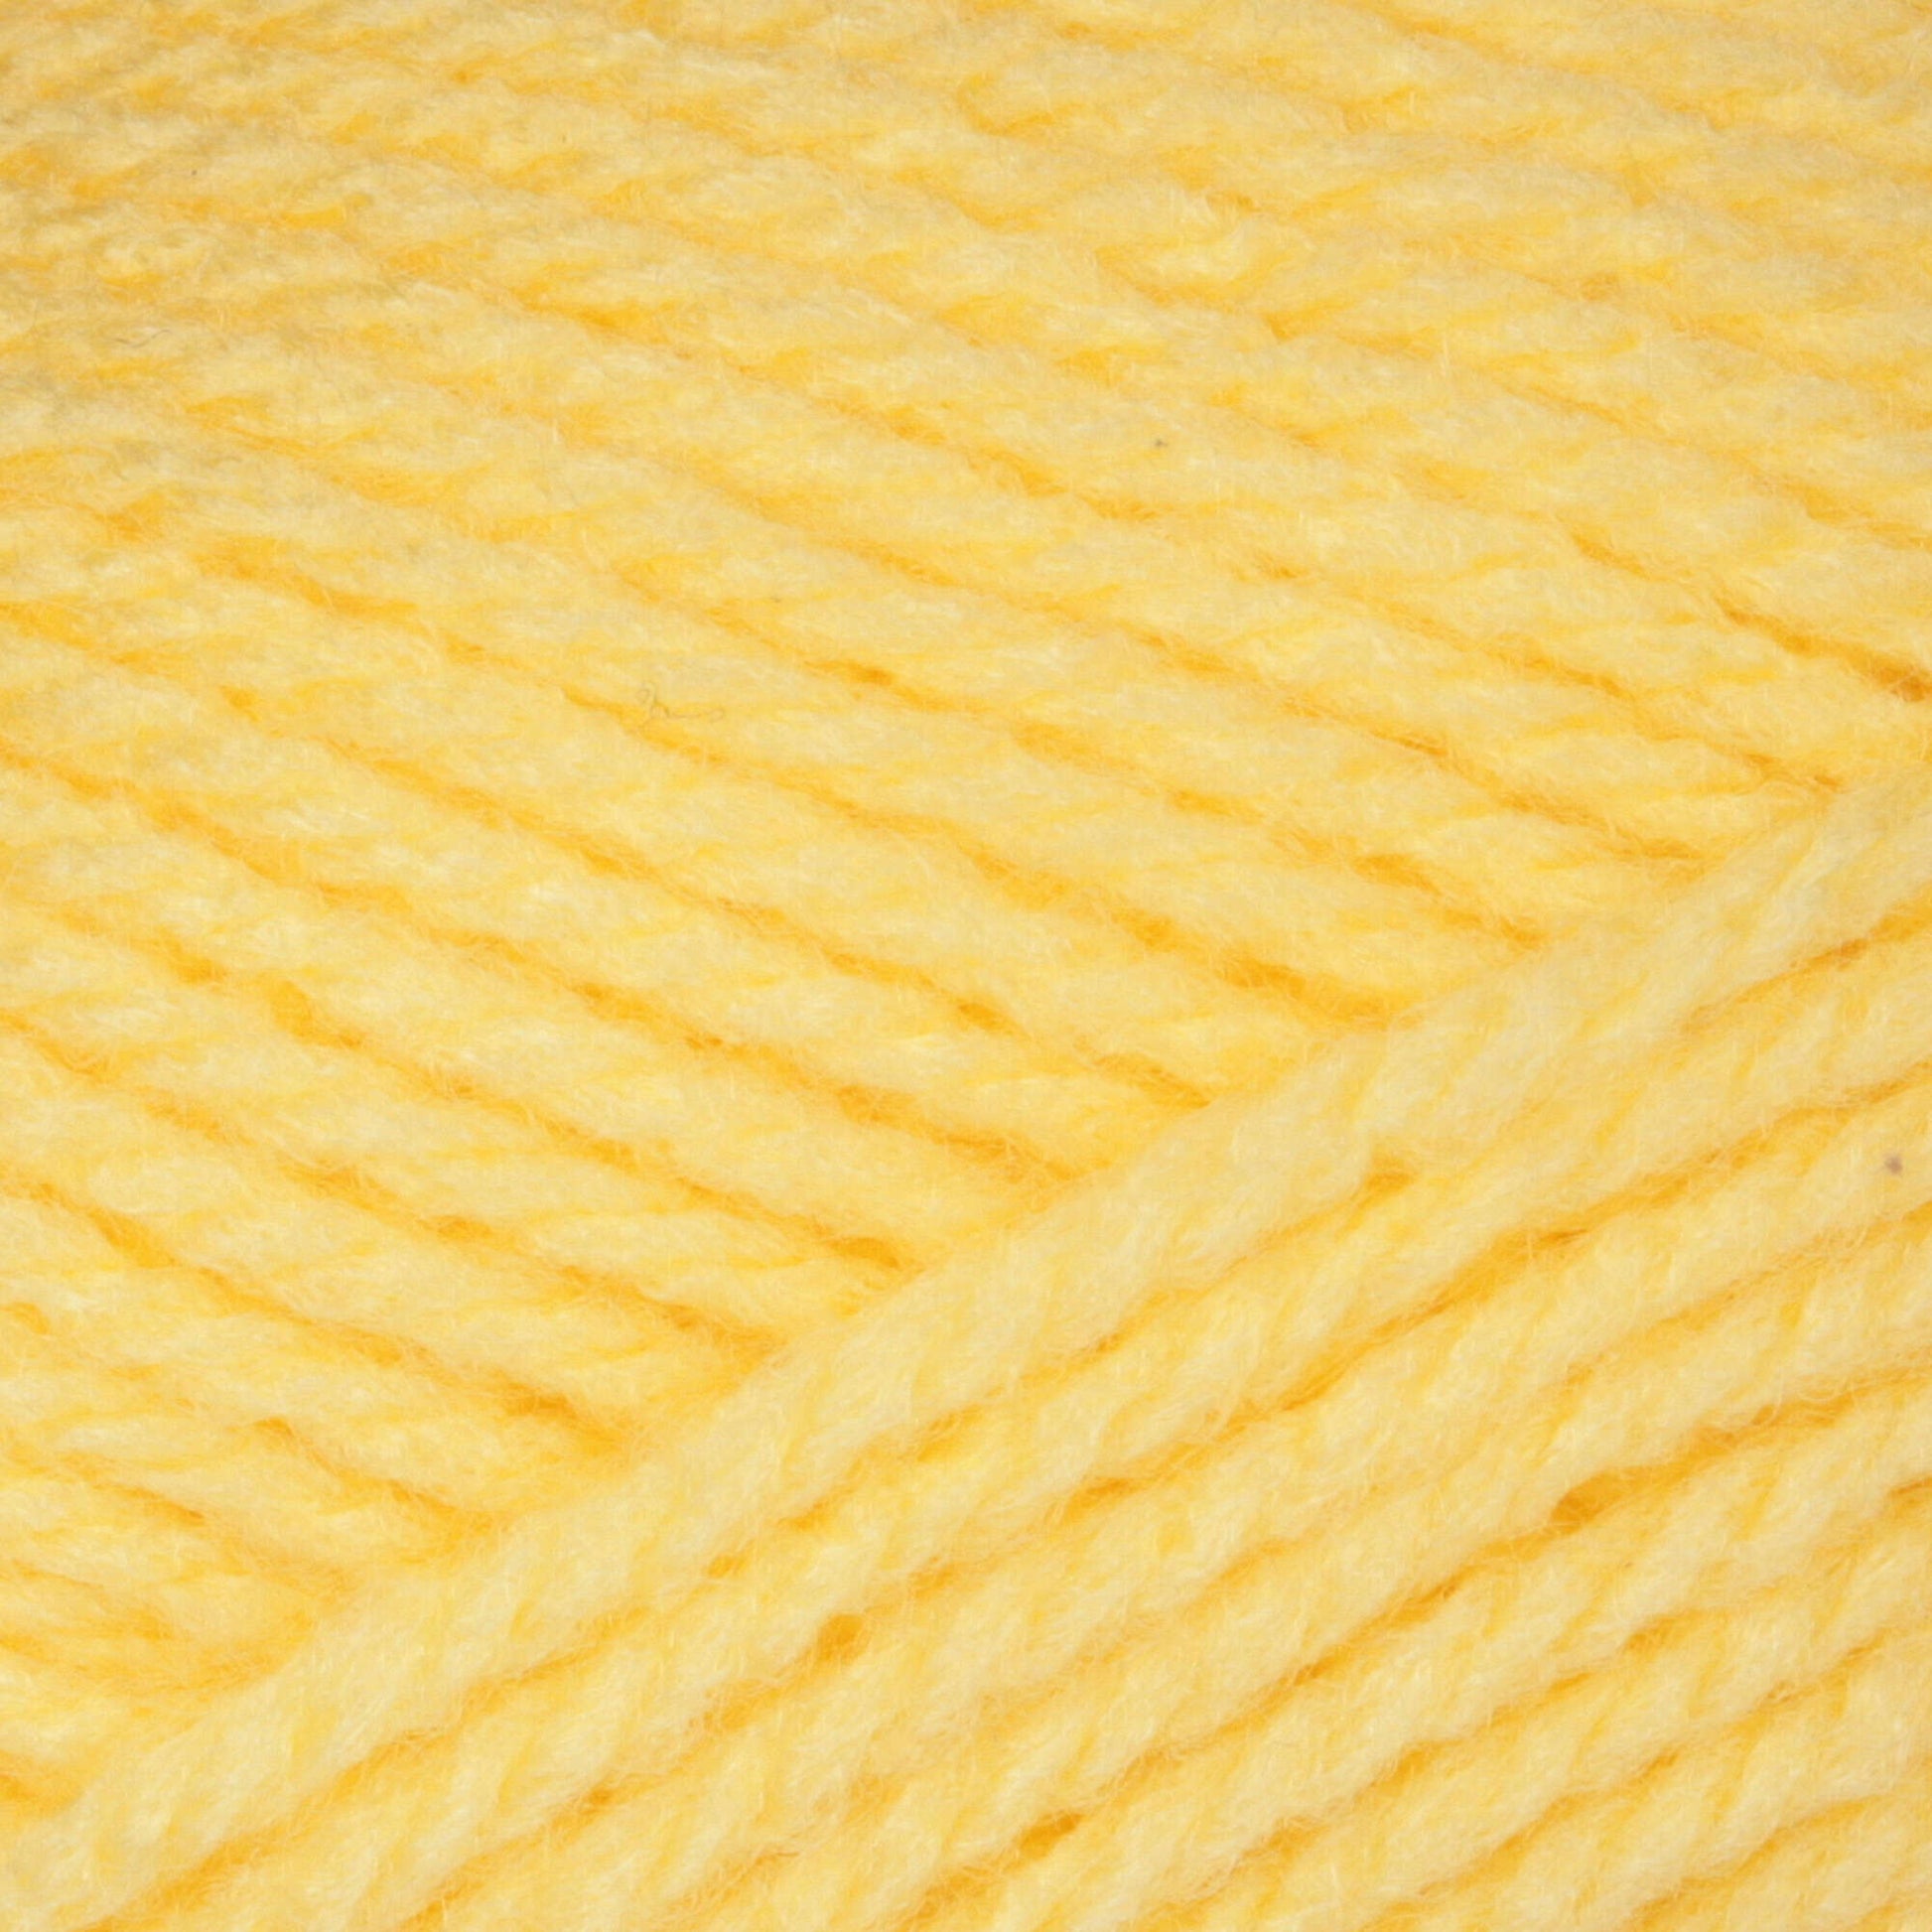 Patons Astra Yarn Maize Yellow